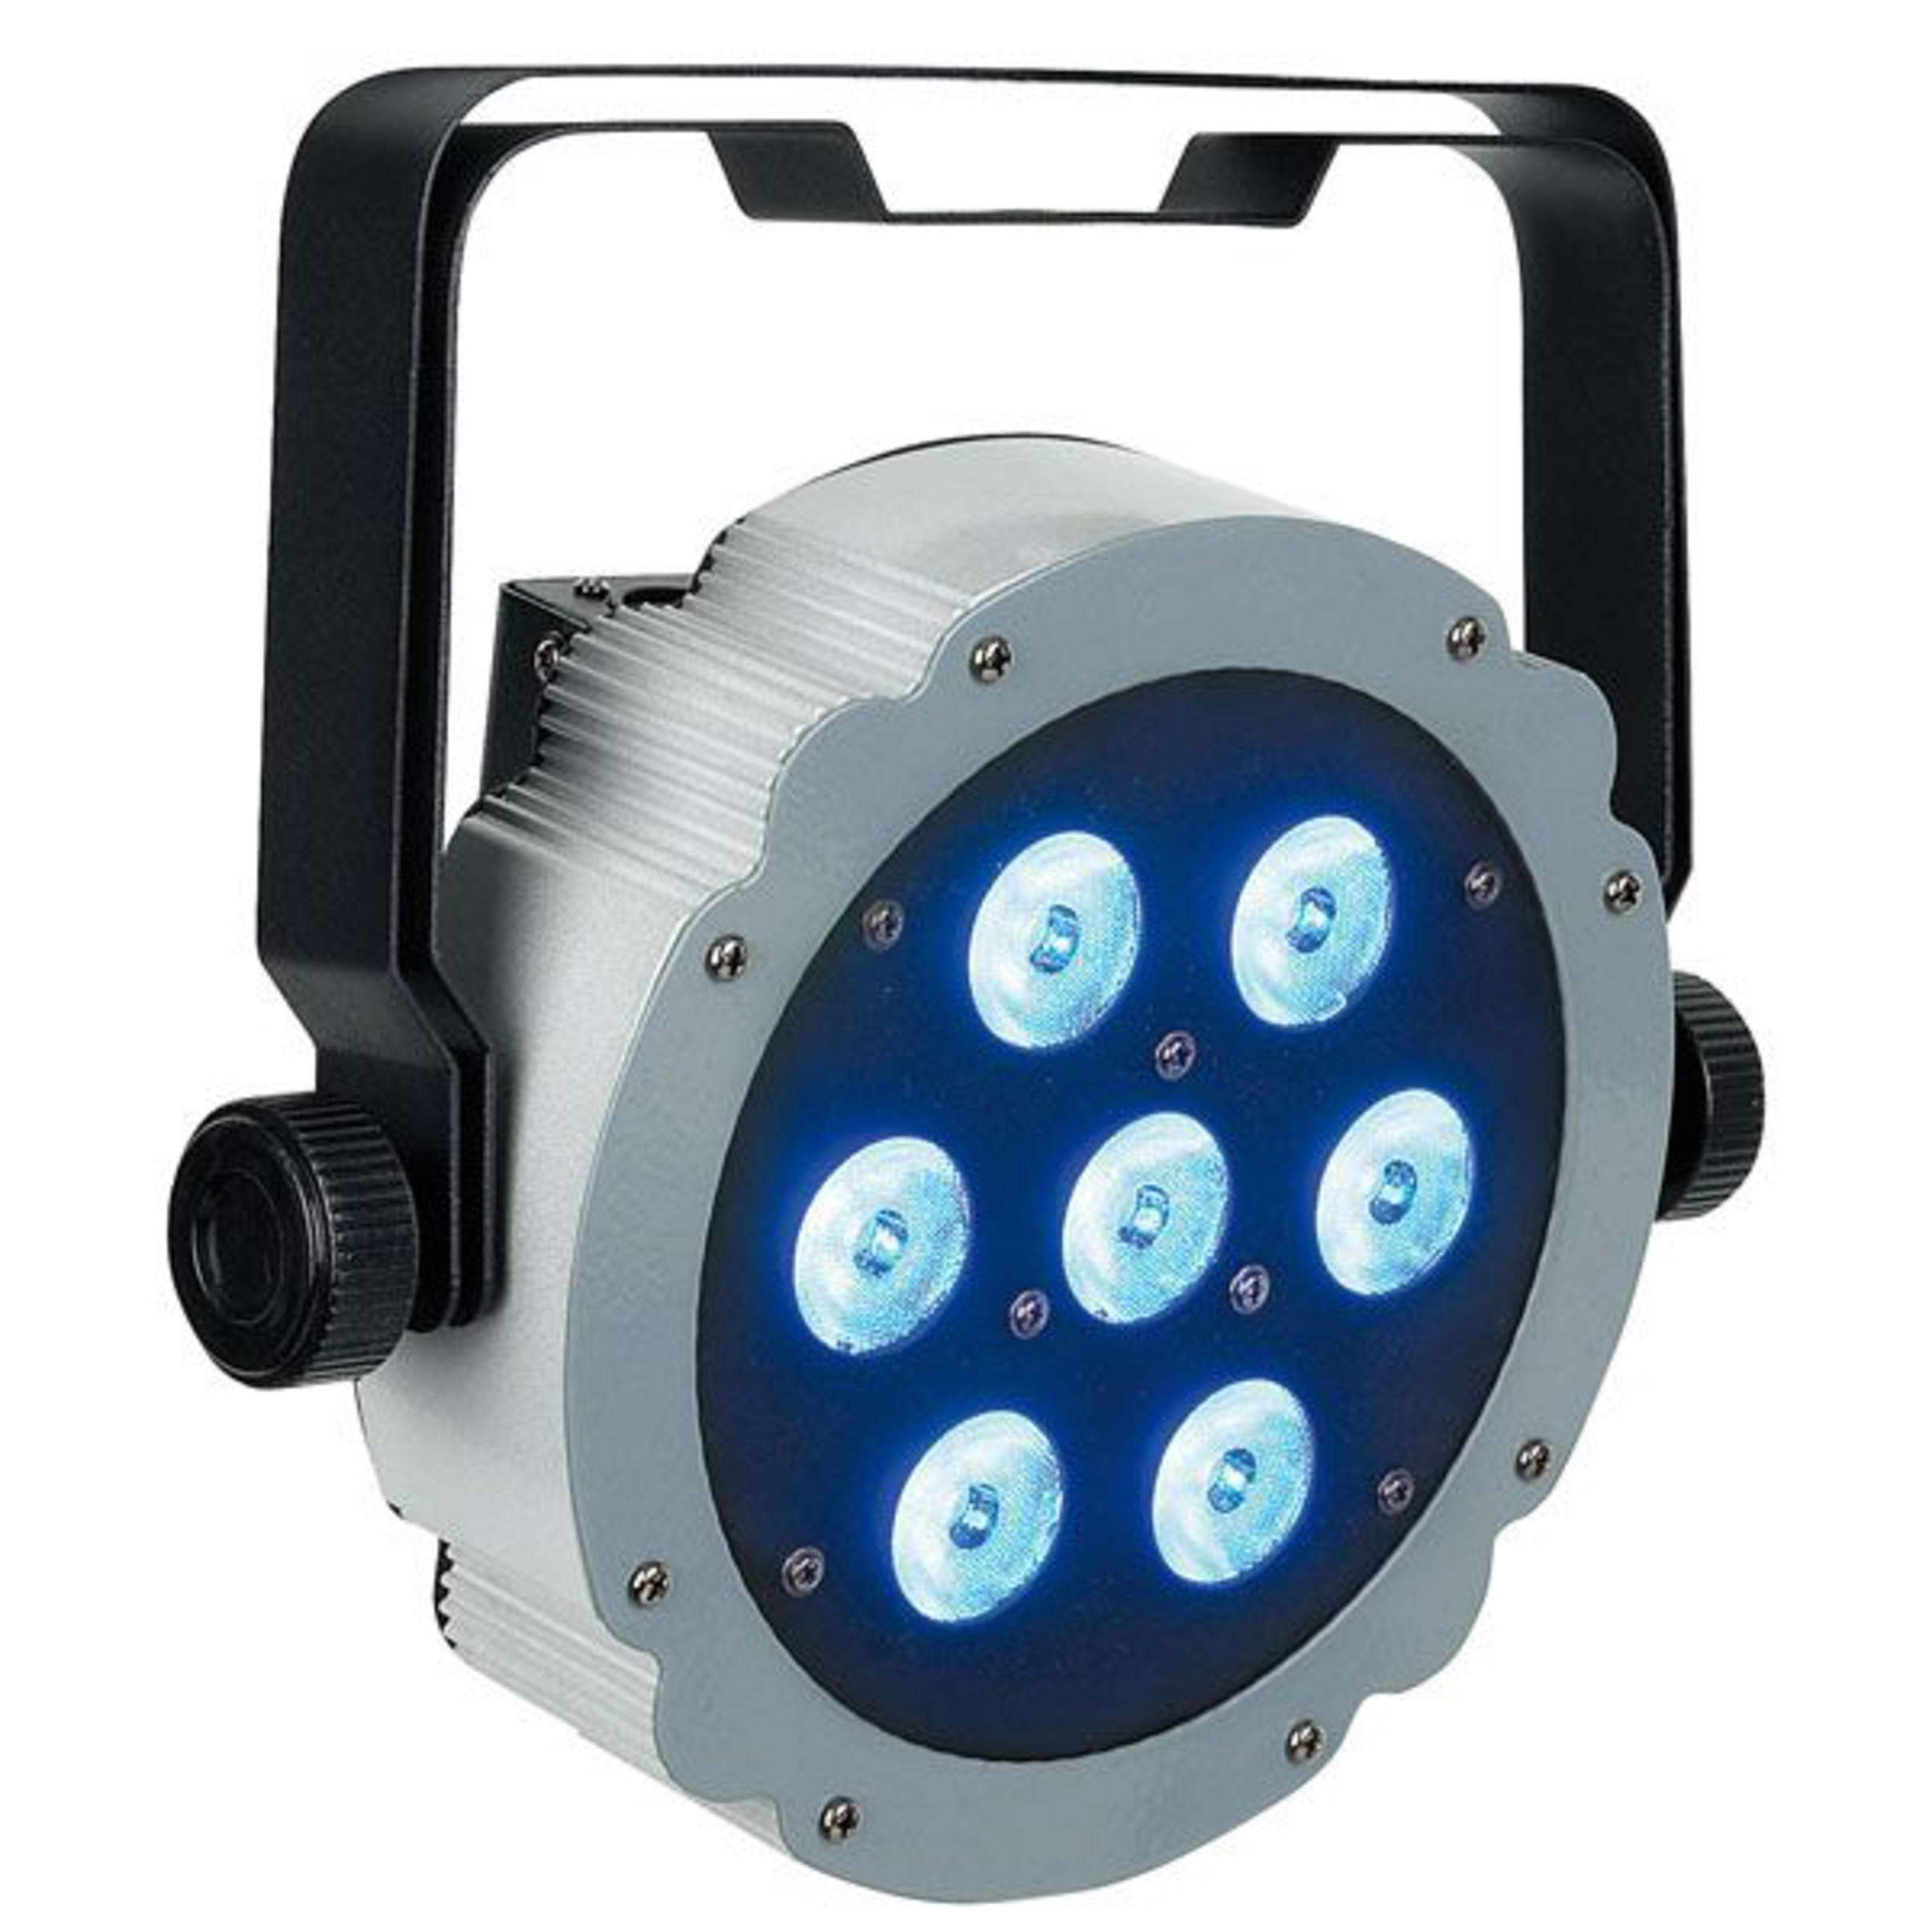 Show tec LED Discolicht, Compact - x 7 LED RGBW PAR Q4 Par Scheinwerfer 3W 7